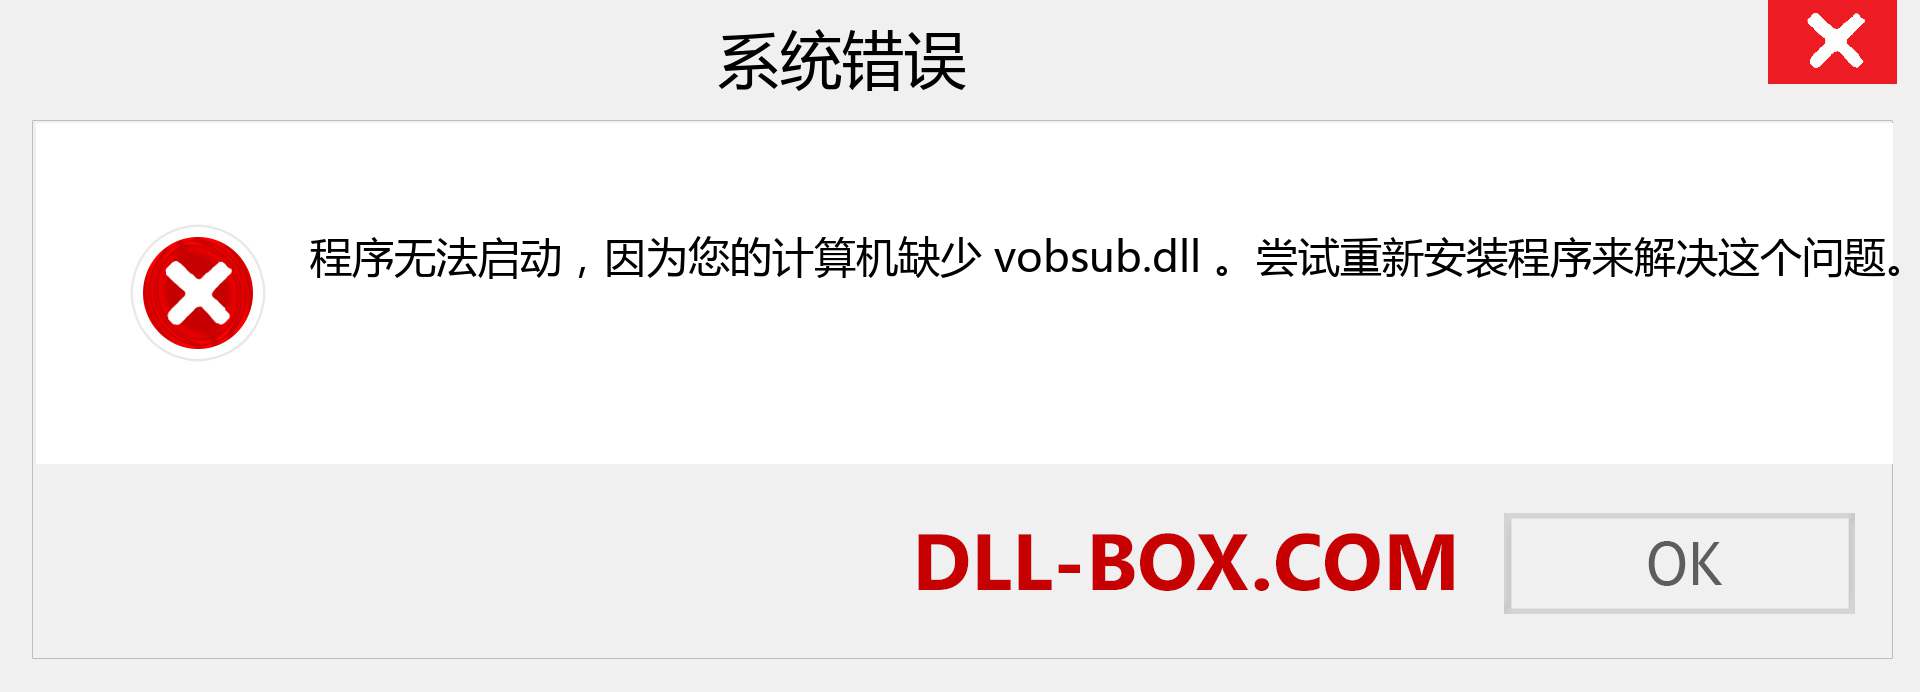 vobsub.dll 文件丢失？。 适用于 Windows 7、8、10 的下载 - 修复 Windows、照片、图像上的 vobsub dll 丢失错误